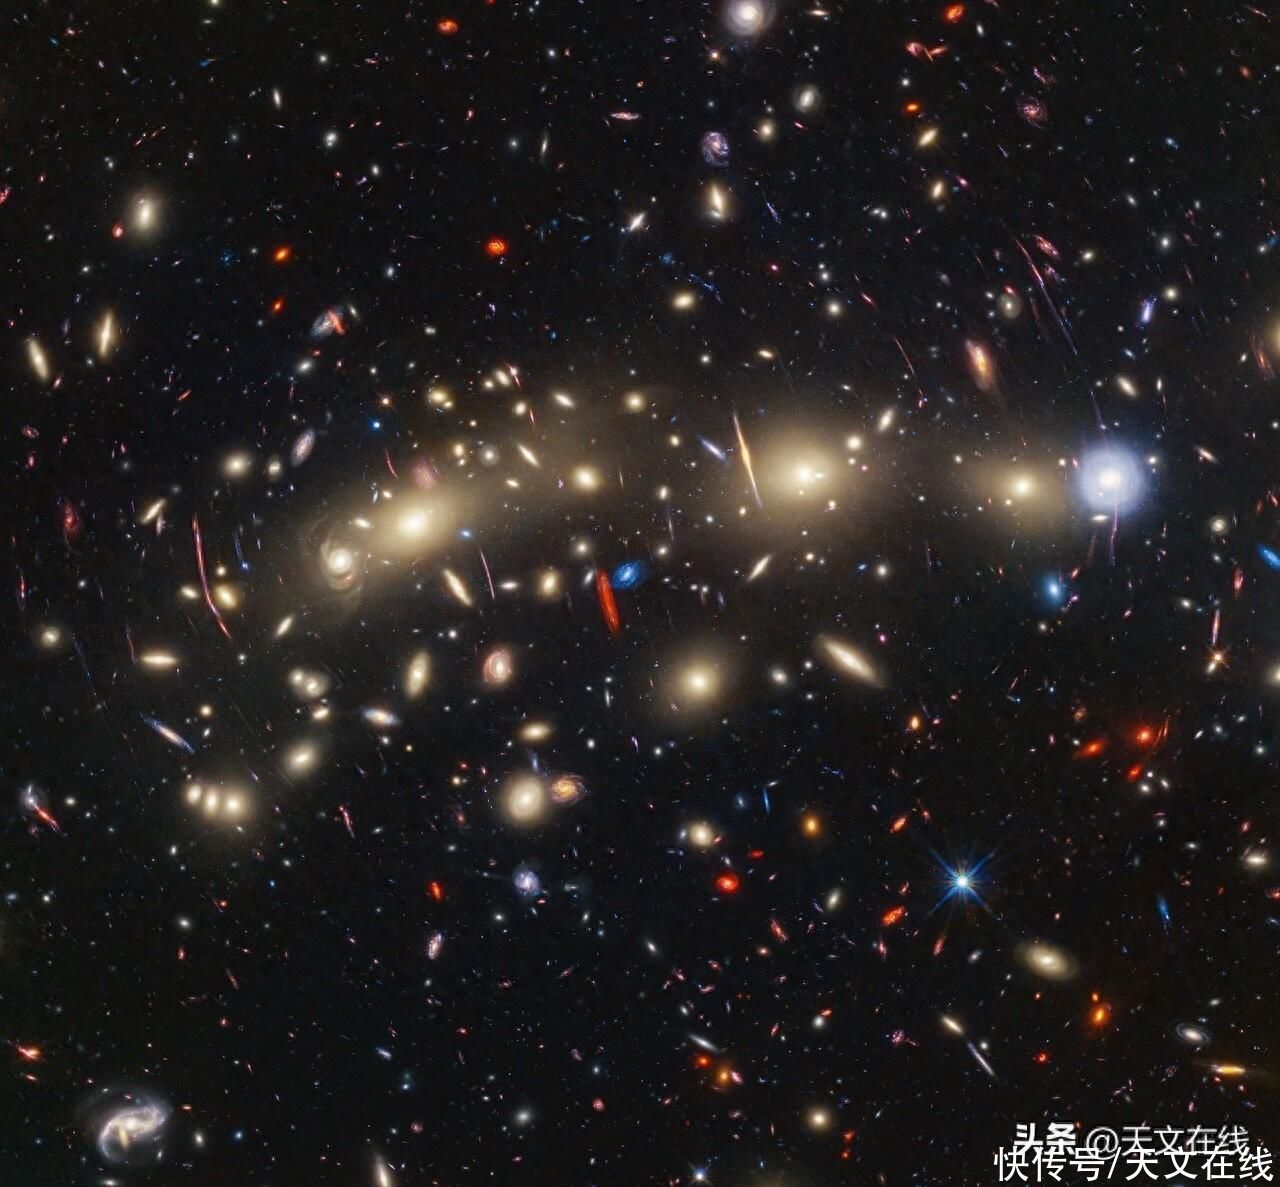 【天文酷图】星系团MACS0416（哈勃和韦伯）